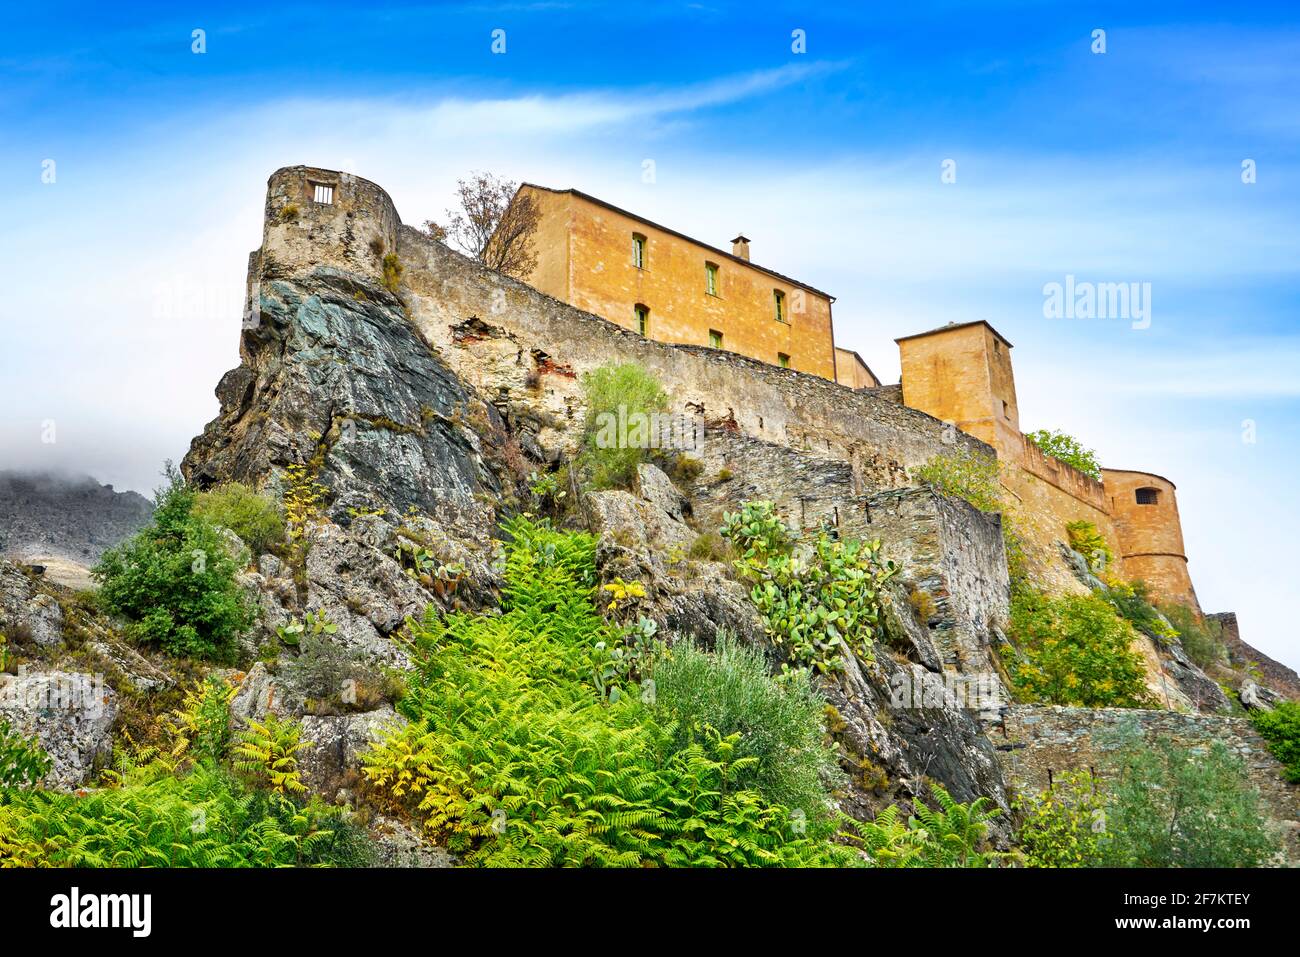 Corte, ehemalige Hauptstadt des unabhängigen Korsika, die Zitadelle in der Altstadt, Korsika Insel, Frankreich Stockfoto